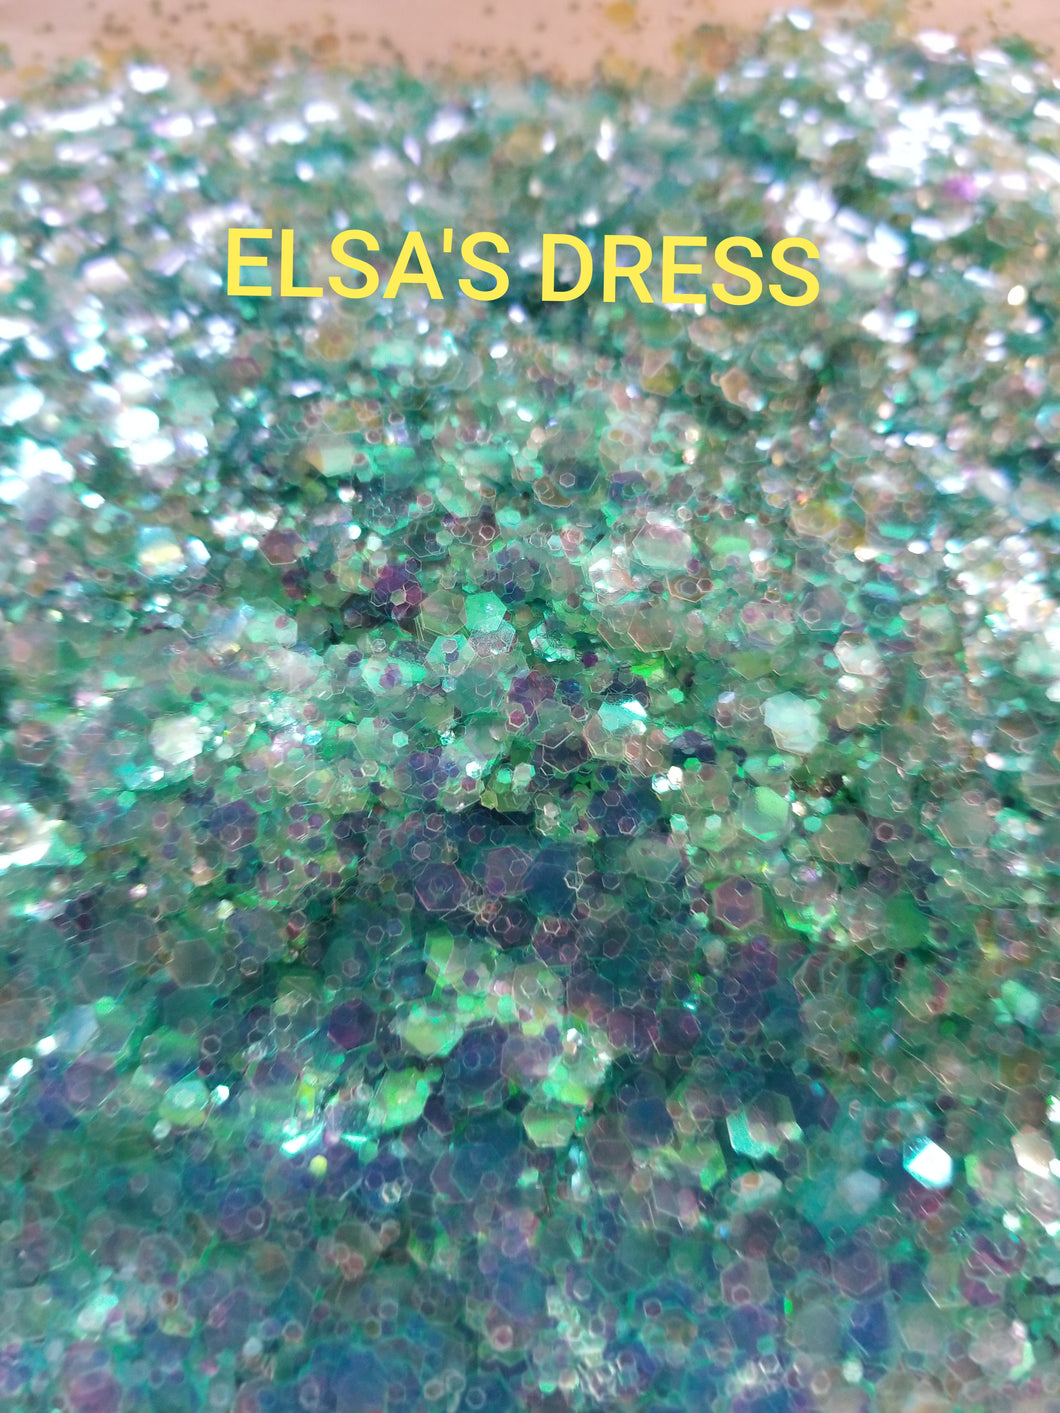 2 OZ OF ELSA'S DRESS